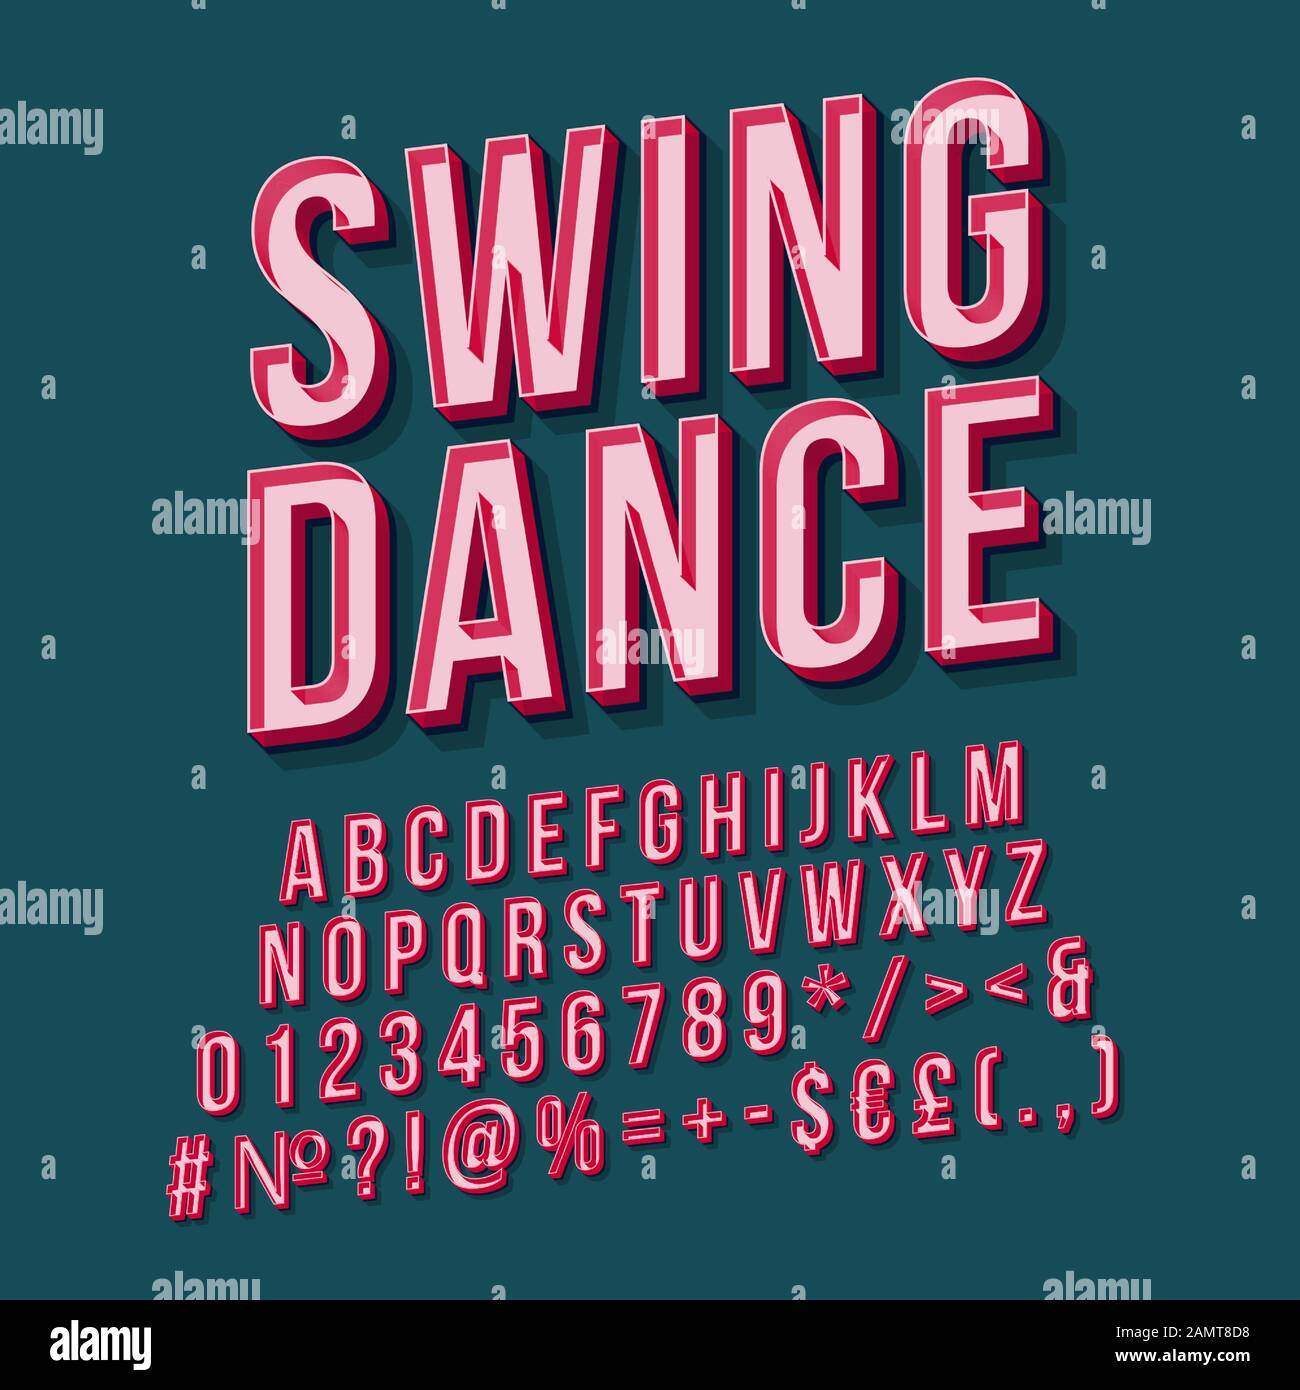 Bạn yêu thích Swing dance? Hãy theo dõi bức hình này để dự đoán vũ điệu sôi động và quyến rũ như thế nào! Được biết đến là một trong những nhảy đẹp và âm nhạc quen thuộc của thập niên 1920-1930, Swing dance đã bắt đầu trở lại và chúng ta đang trải nghiệm lại sự thư giãn và sự náo nhiệt của nó.